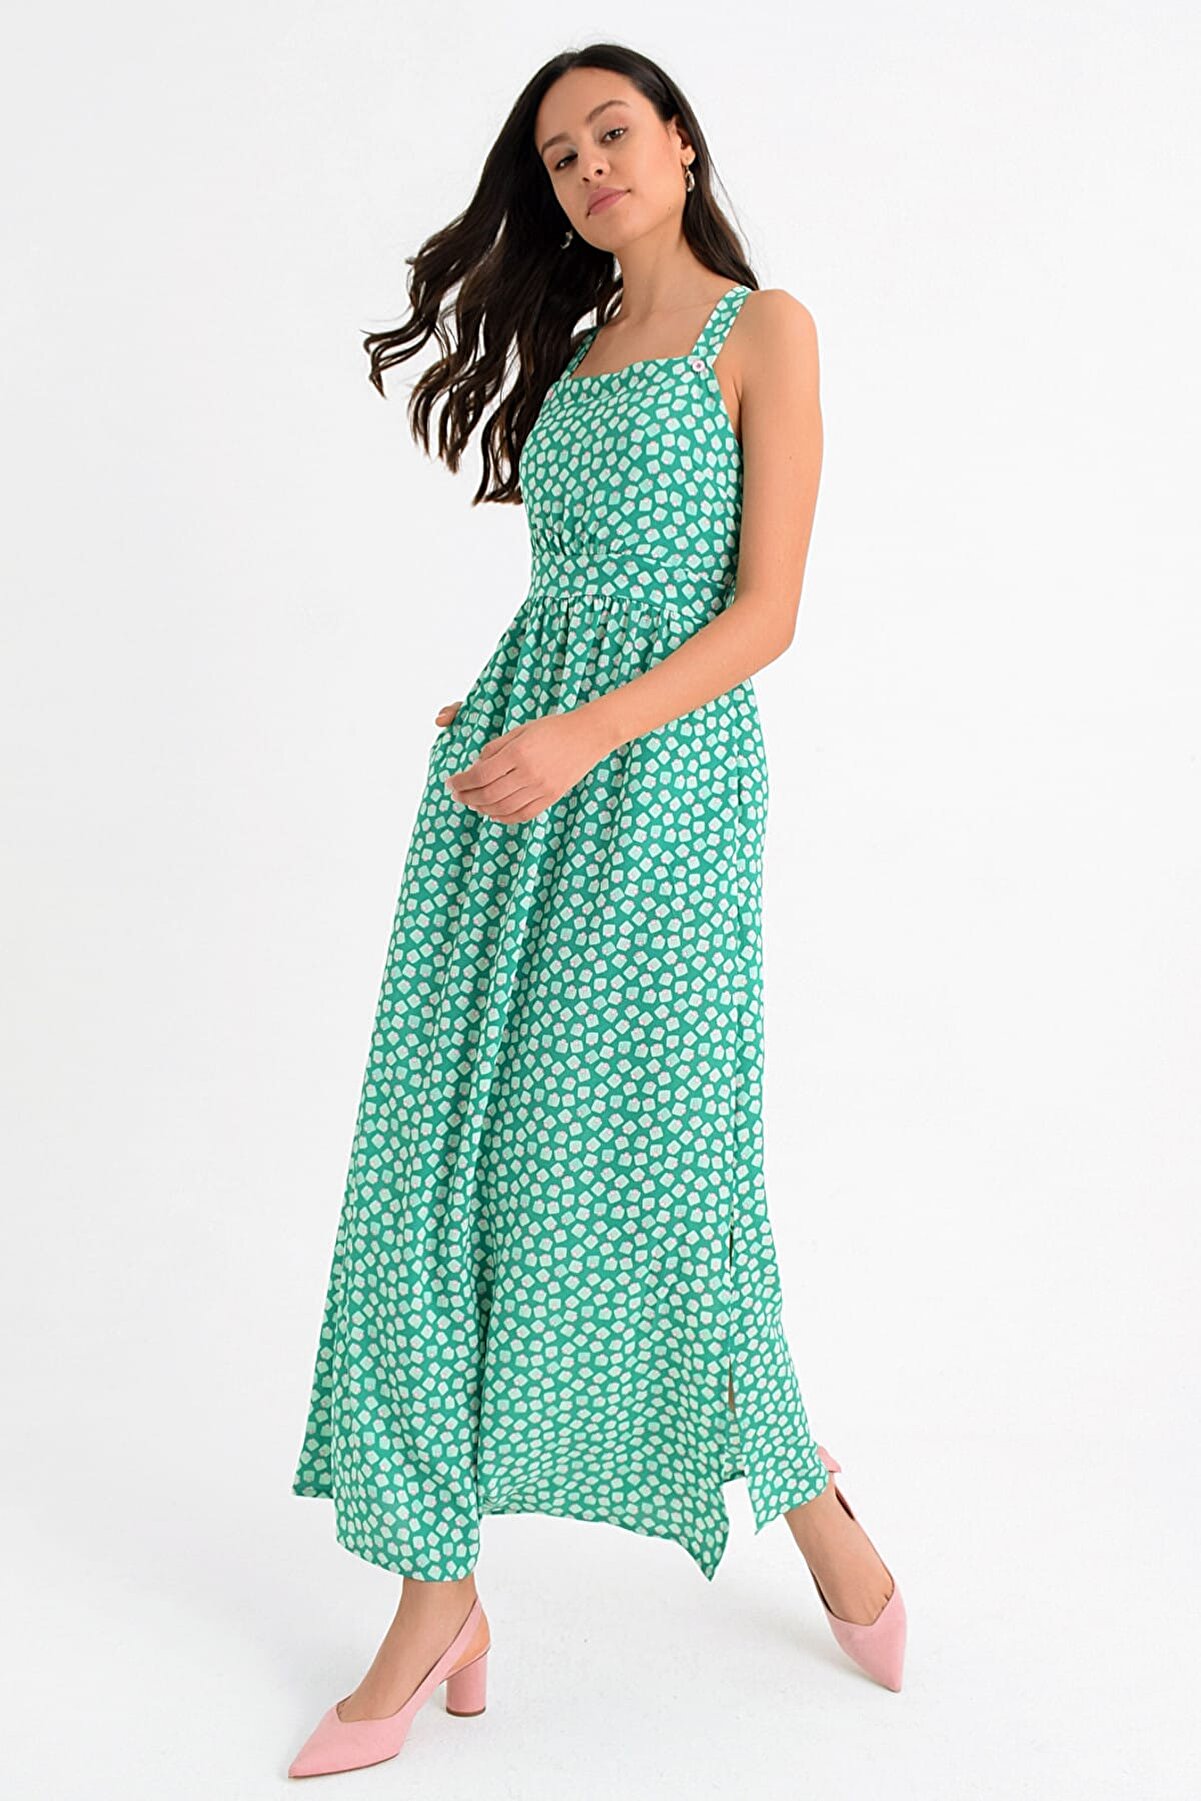 Hanna's Kadın Yeşil Askılı Yırtmaçlı Çapraz Sırt Dekolteli Uzun Elbise Hn1657